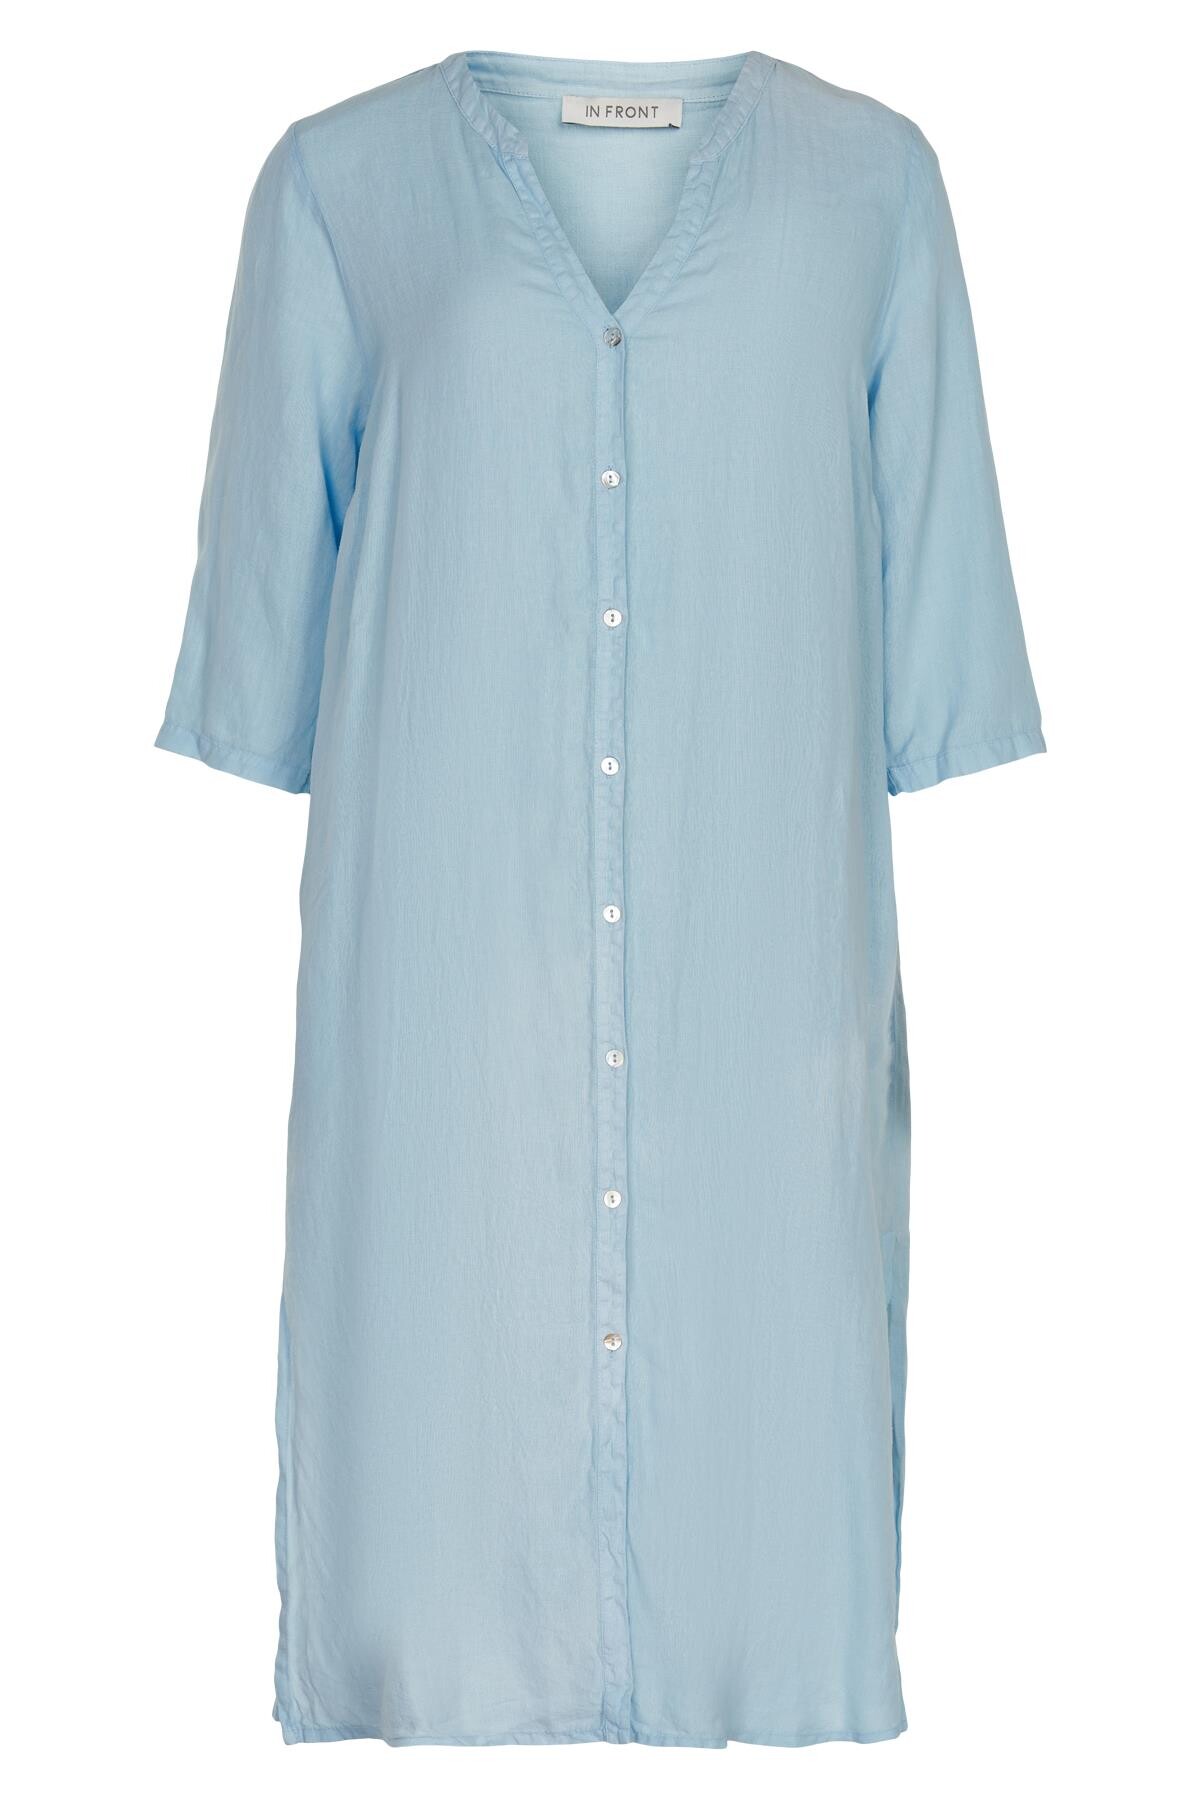 Se IN FRONT Lino Lang Skjortekjole, Farve: Light Blue, Størrelse: S, Dame hos Infront Women